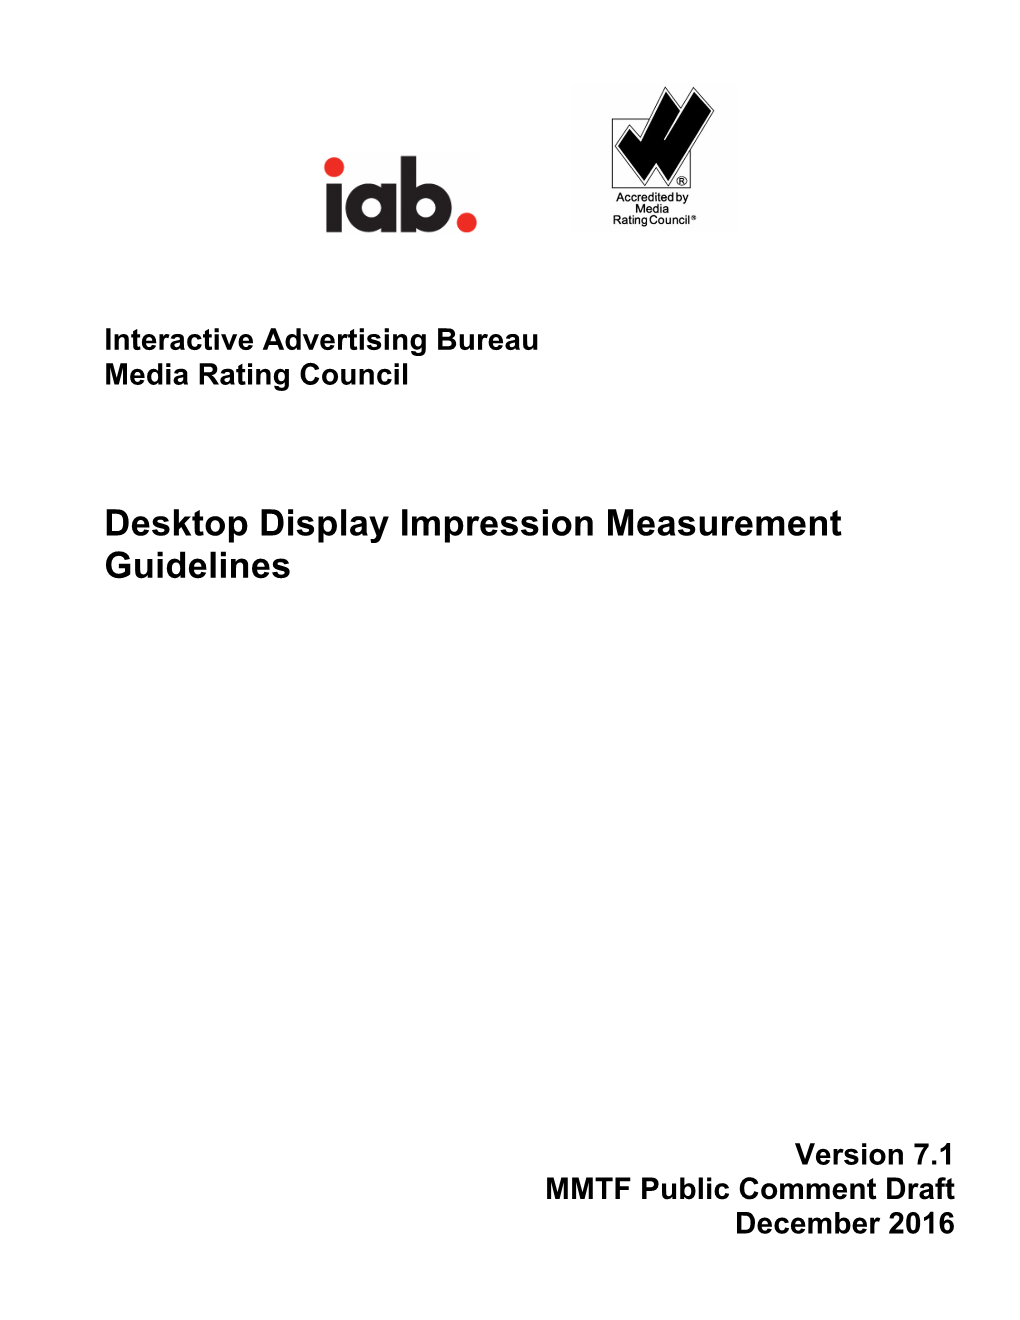 Desktop-Display-Impression